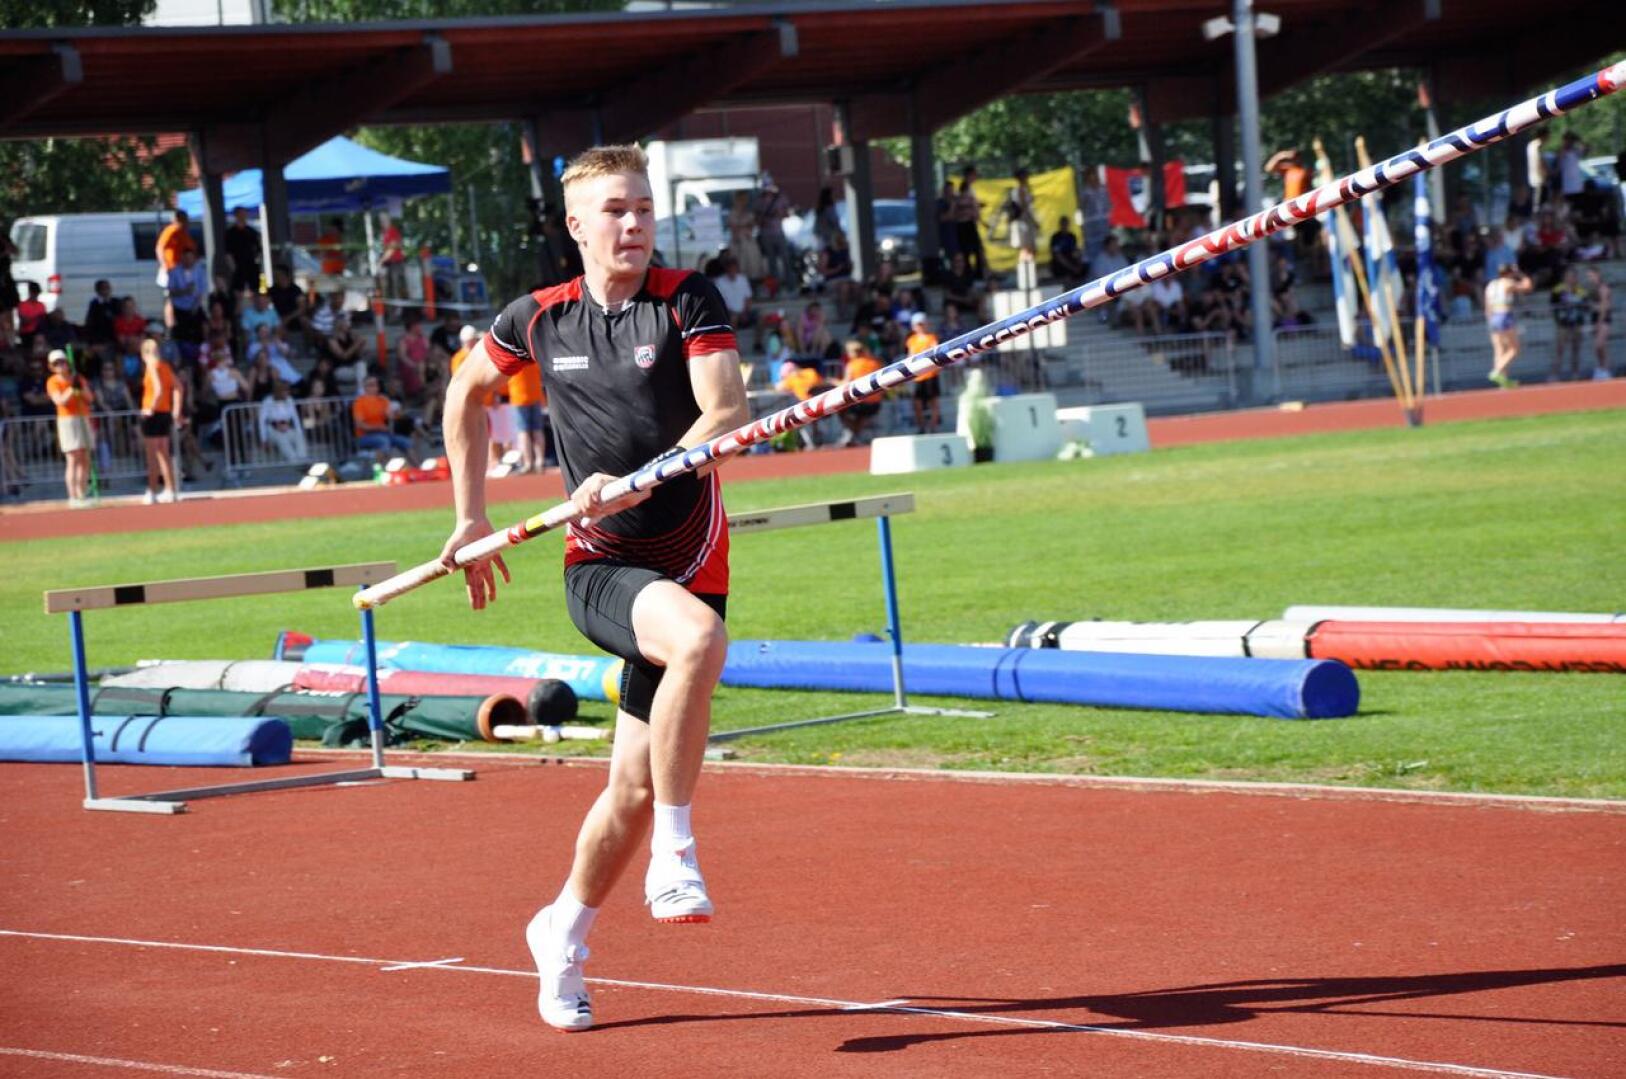 Arkistokuvassa Oskari Tikkakoski on hyppäämässä Lempäälän SM-kisoissa nykyistä ennätystään. Neljän metrin korkeus ylittyi ensimmäisellä yrityksellä. 